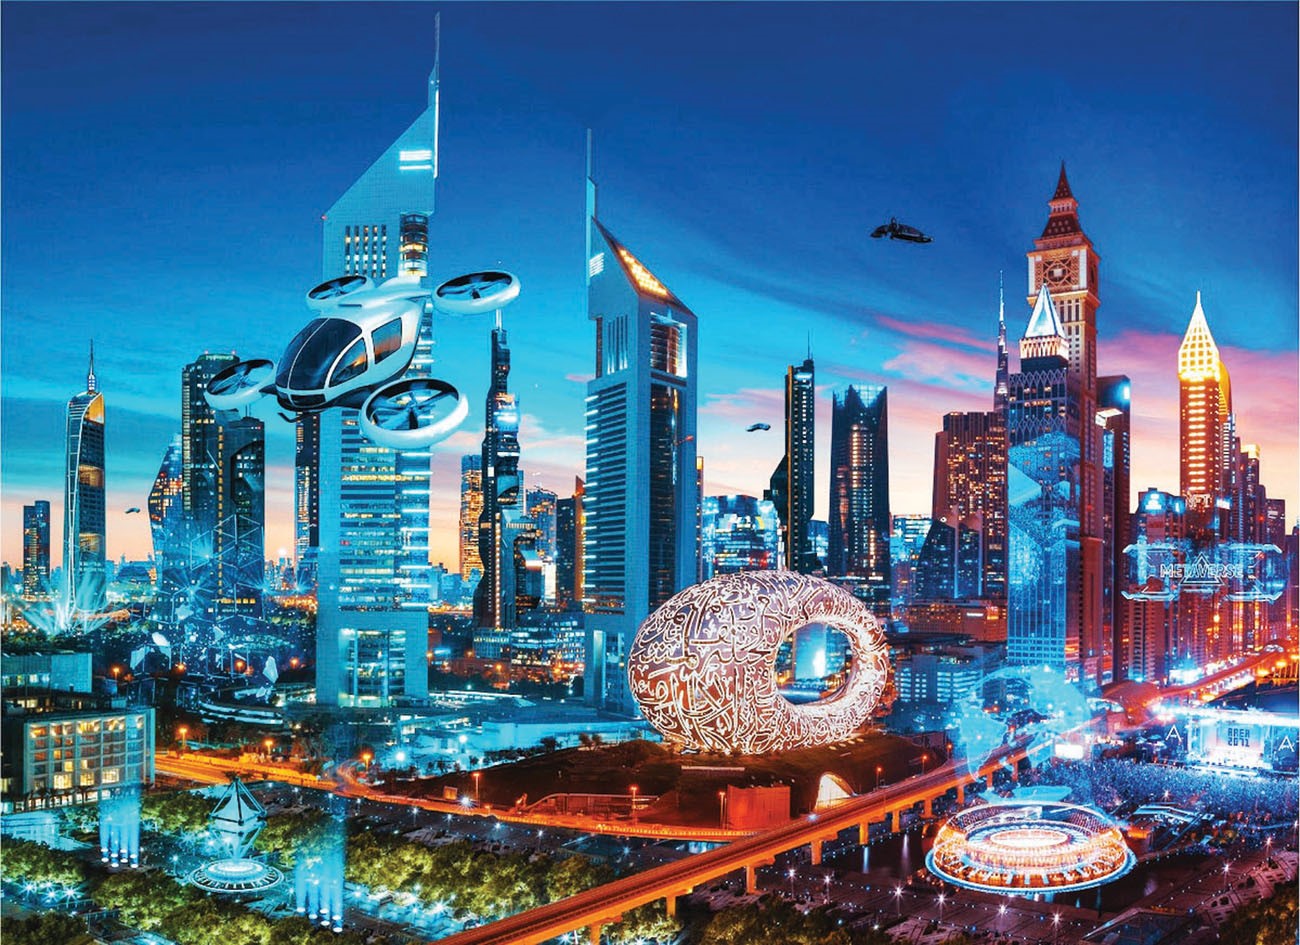 Imagined-future-aspect-and-technologies-in Dubai